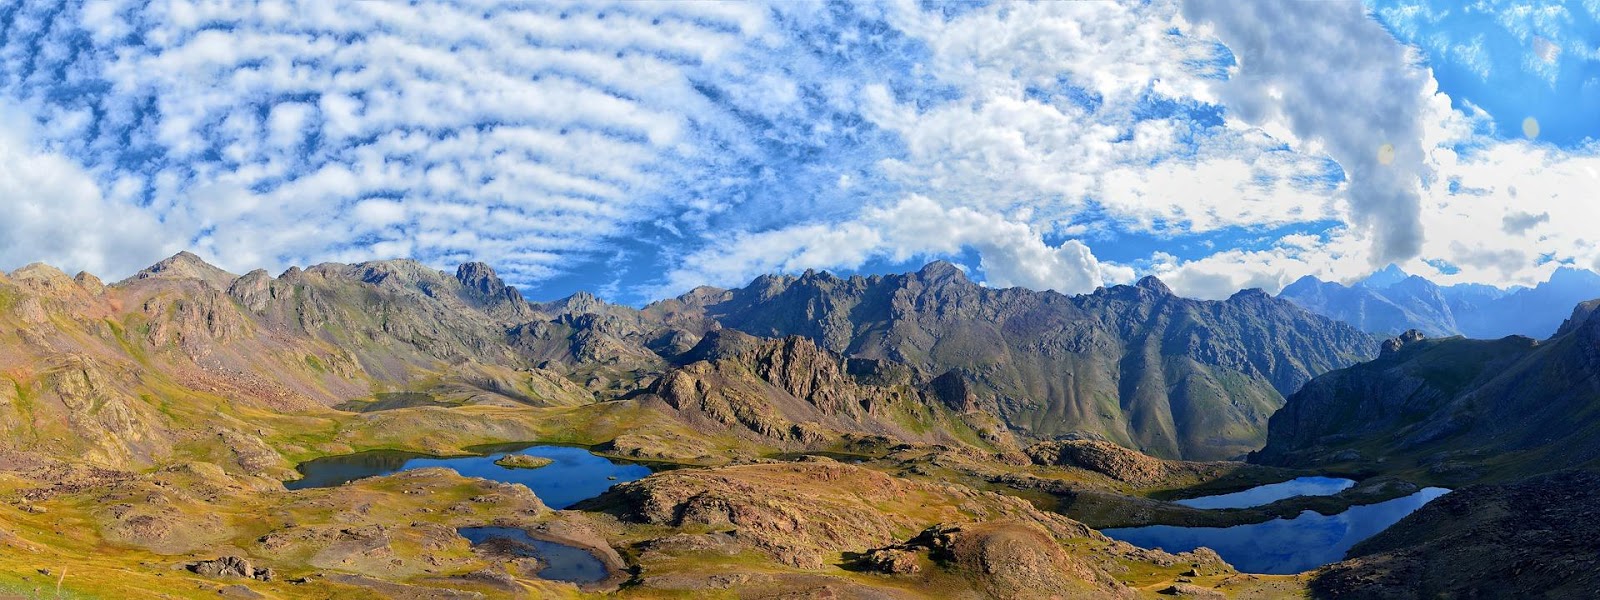 <b>Hemi-grabens dans les montagens Kaçkar au nord-est de la Turquie et appartenant à la ceinture alpine</b><div><i>kackars-3056679_1920, Image par RÜŞTÜ BOZKUŞ de Pixabay , via pixabay , pixabay licence, libre pour usage commercial, https://pixabay.com/fr/photos/ka%C3%A7kars-paysage-nature-montagnes-3056679/</i><b><br></b></div>